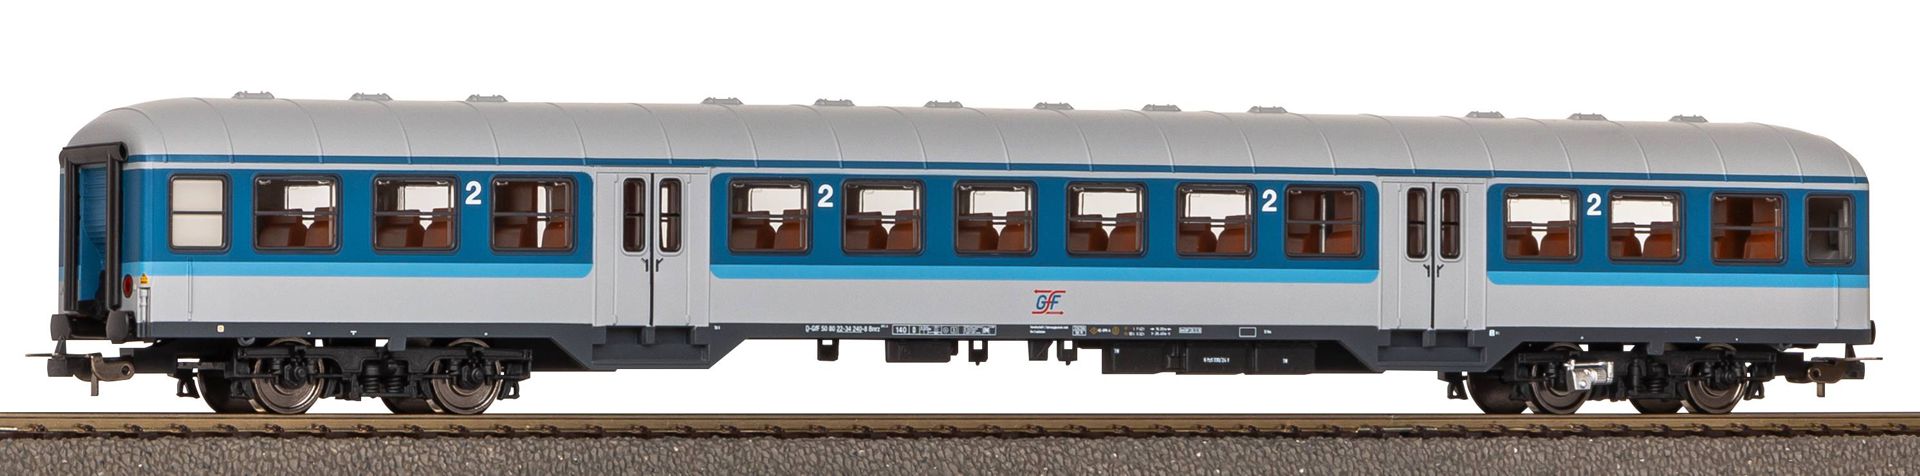 Piko 23600 - Personenwagen n-Wagen, 2. Klasse, GfK, Ep.VI